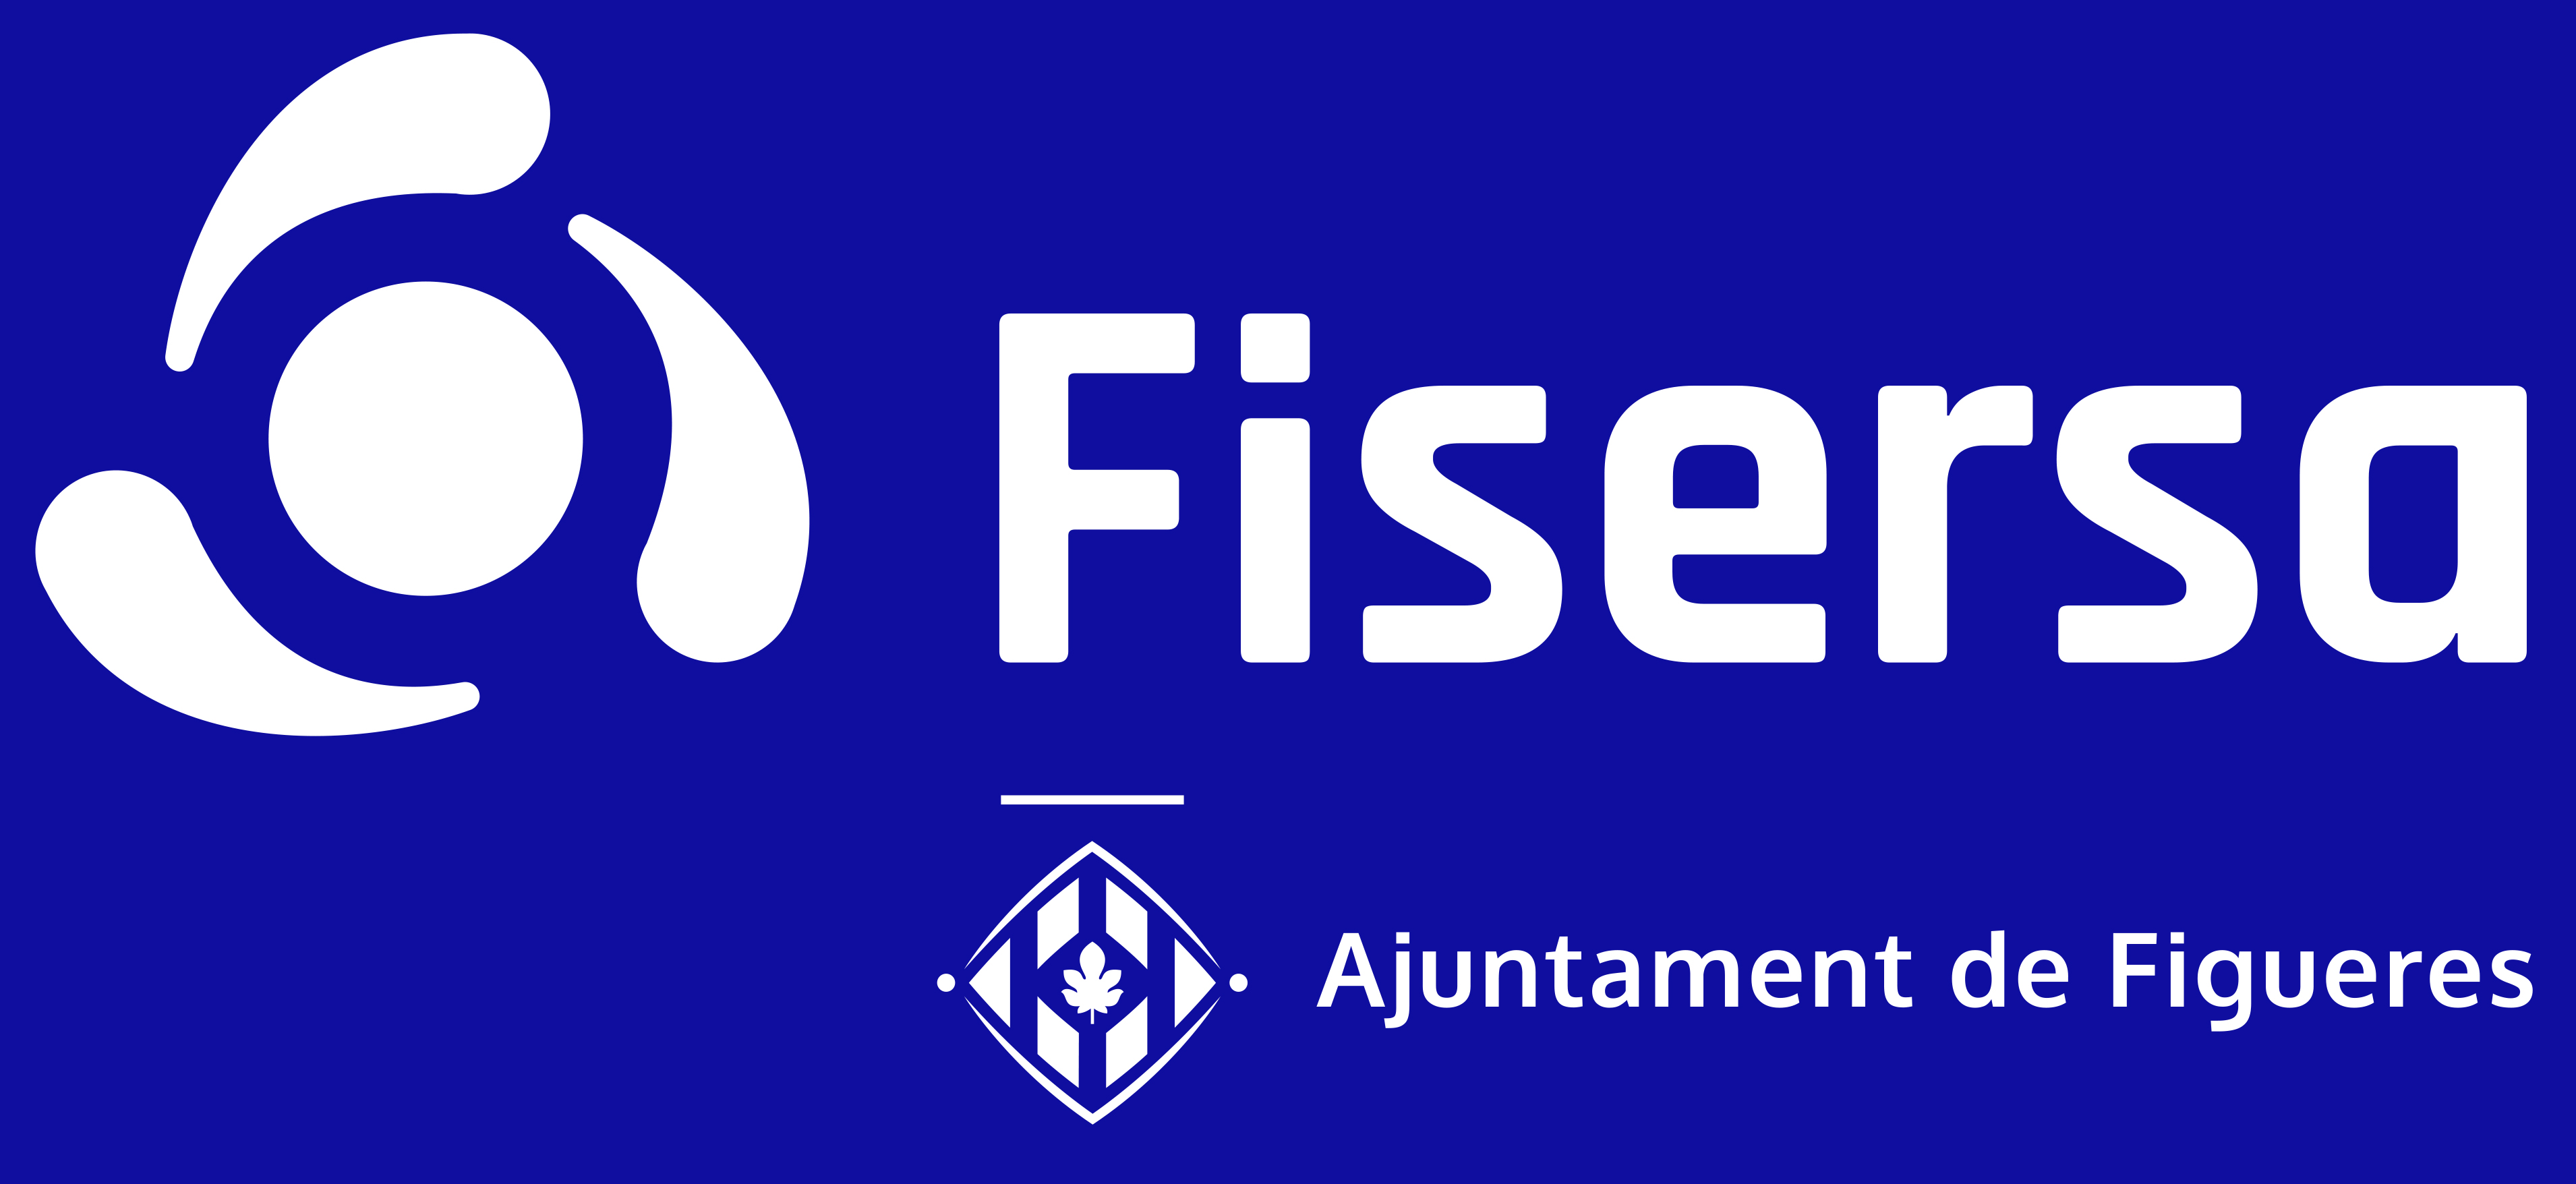 Logo de Fisersa en blanc corporatiu sobre fons blau corporatiu amb el logotip de l'ajuntament de Figueres